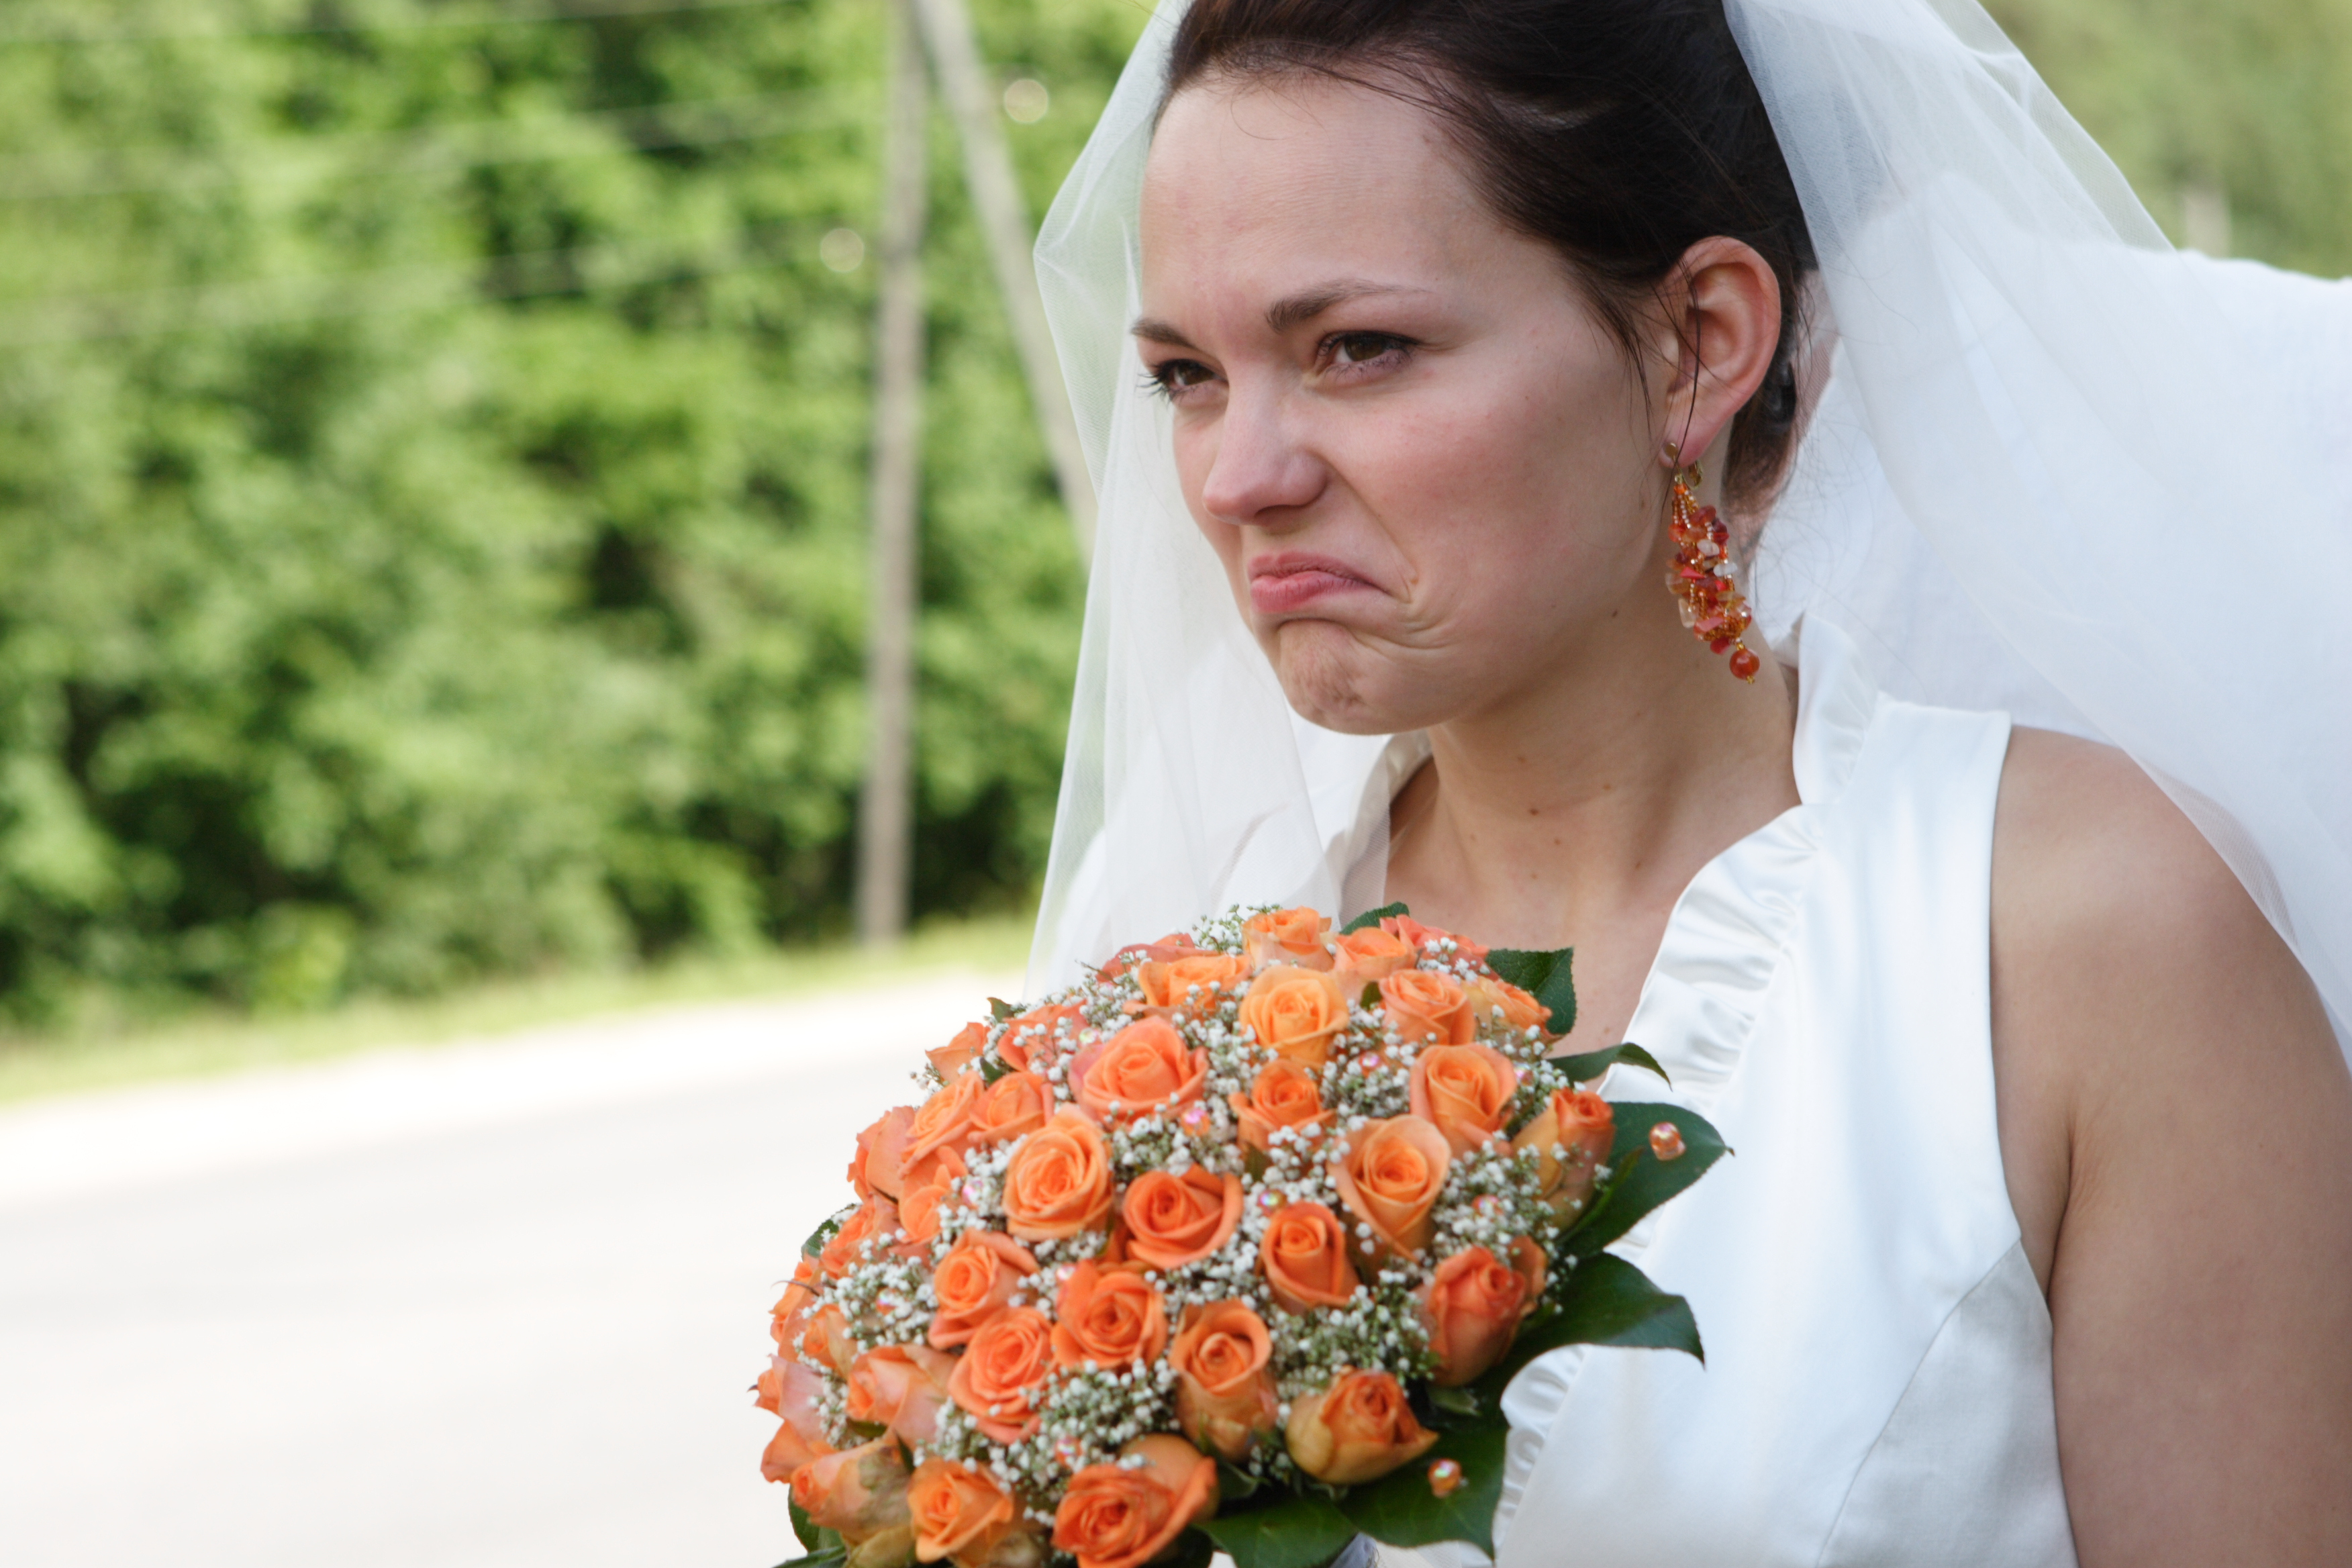 Unglückliche Braut | Quelle: Getty Images